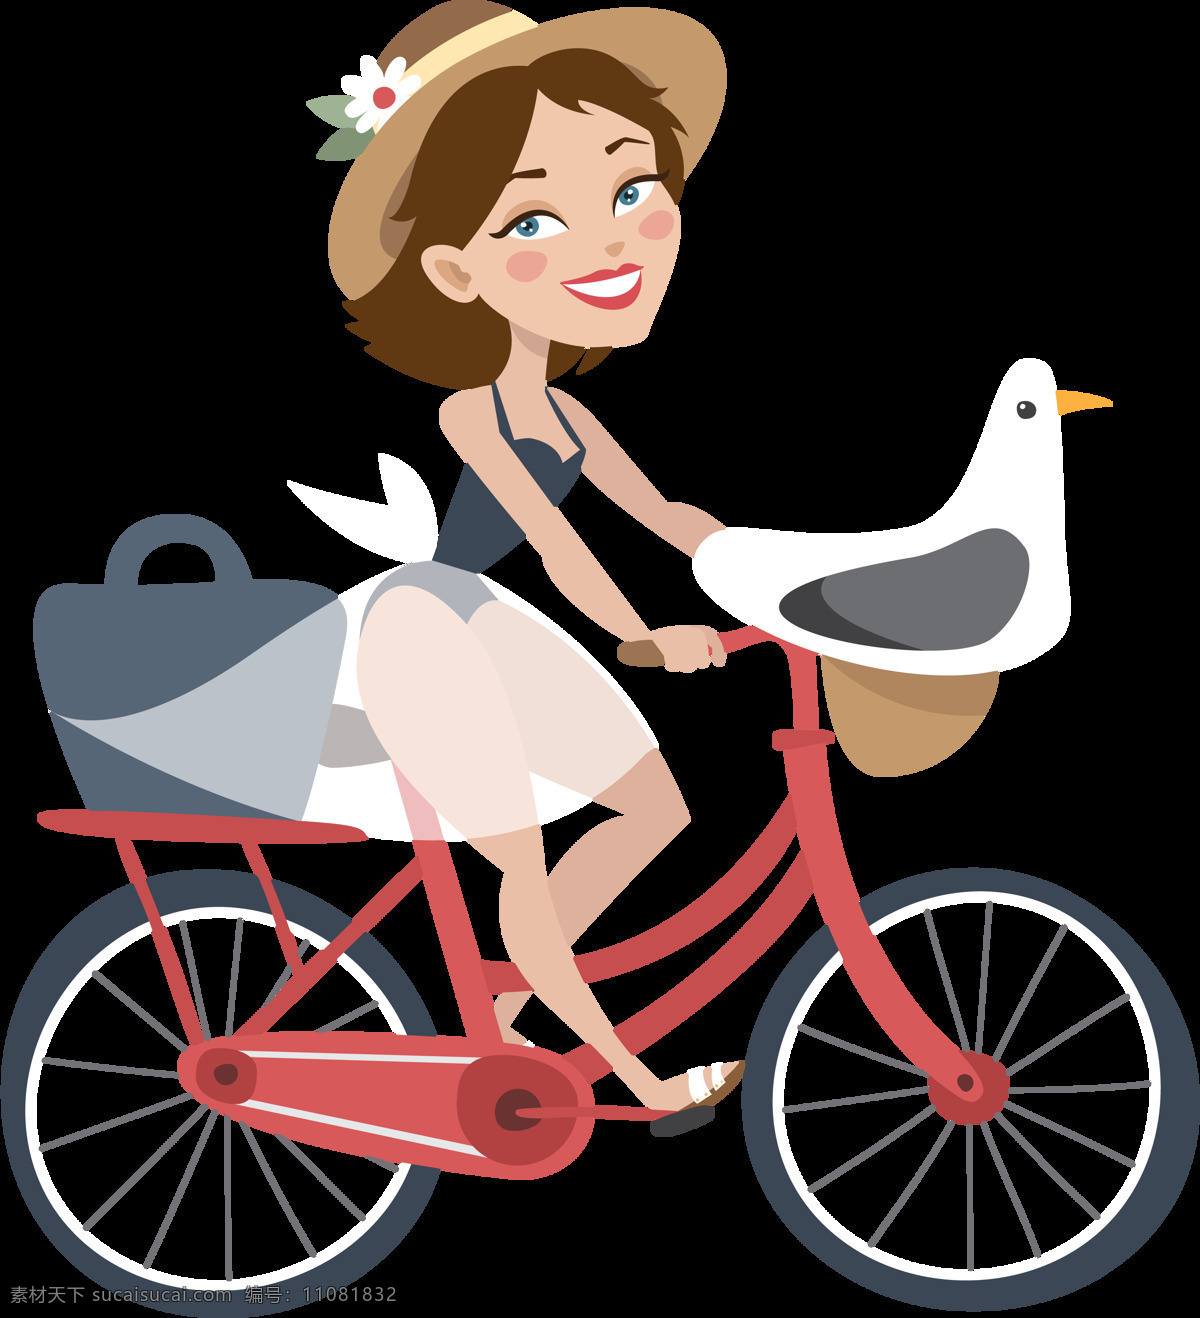 手绘 女孩 骑 自行车 插画 免 抠 透明 共享单车 女式单车 男式单车 电动车 绿色低碳 绿色环保 环保电动车 健身单车 摩拜 ofo单车 小蓝单车 双人单车 多人单车